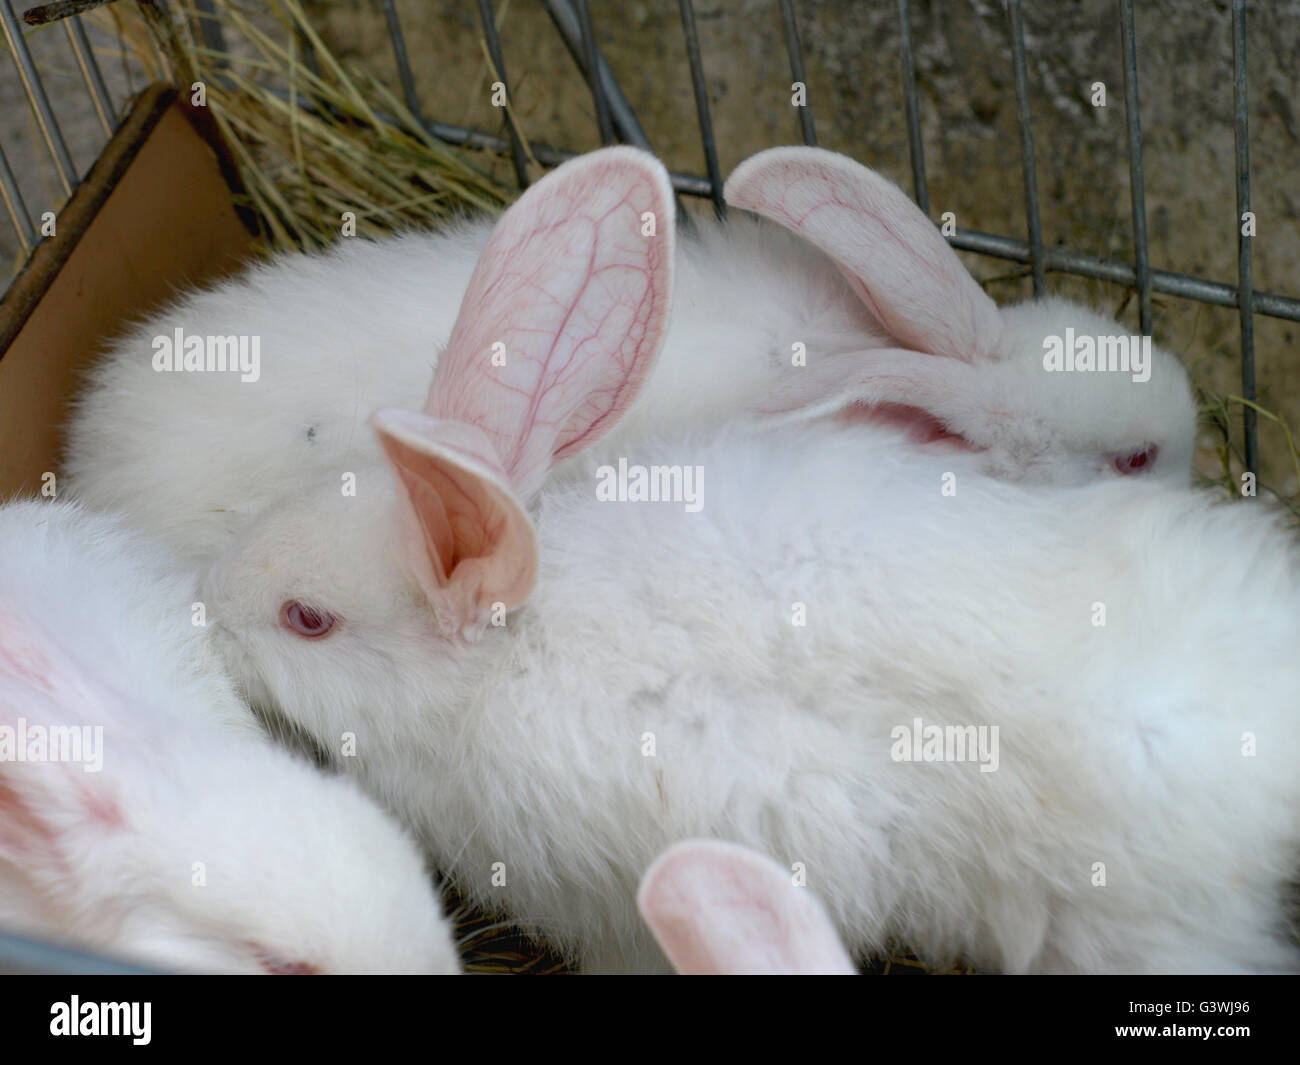 Kaninchen auf Bauernhof mit Tieren im Kaninchenstall Stockfotografie - Alamy